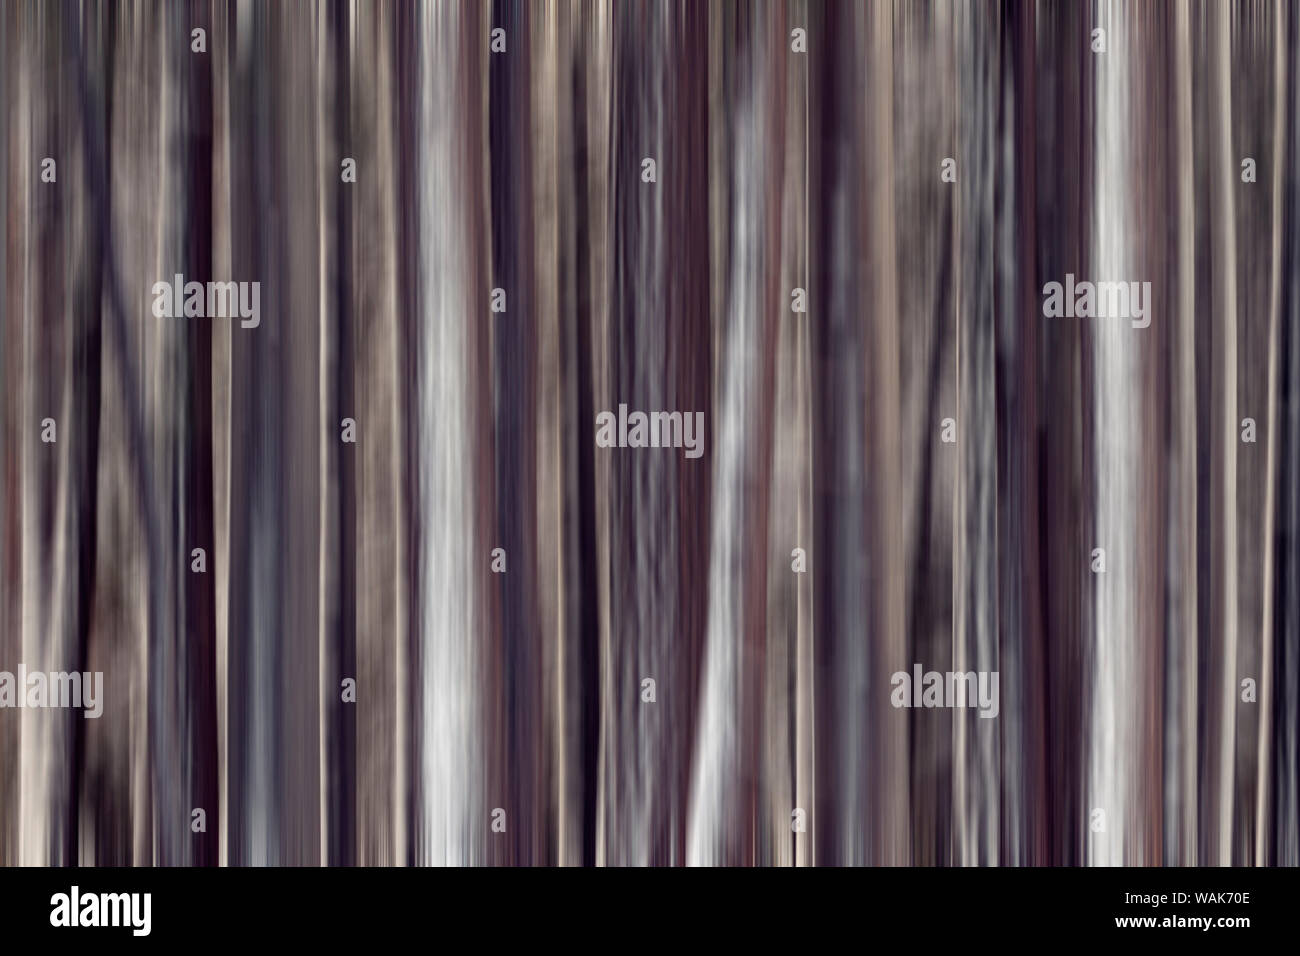 États-unis, Californie, la Sierra Nevada. Résumé des troncs de pins après tempête de neige. En tant que crédit : Dennis Flaherty / Jaynes Gallery / DanitaDelimont.com Banque D'Images